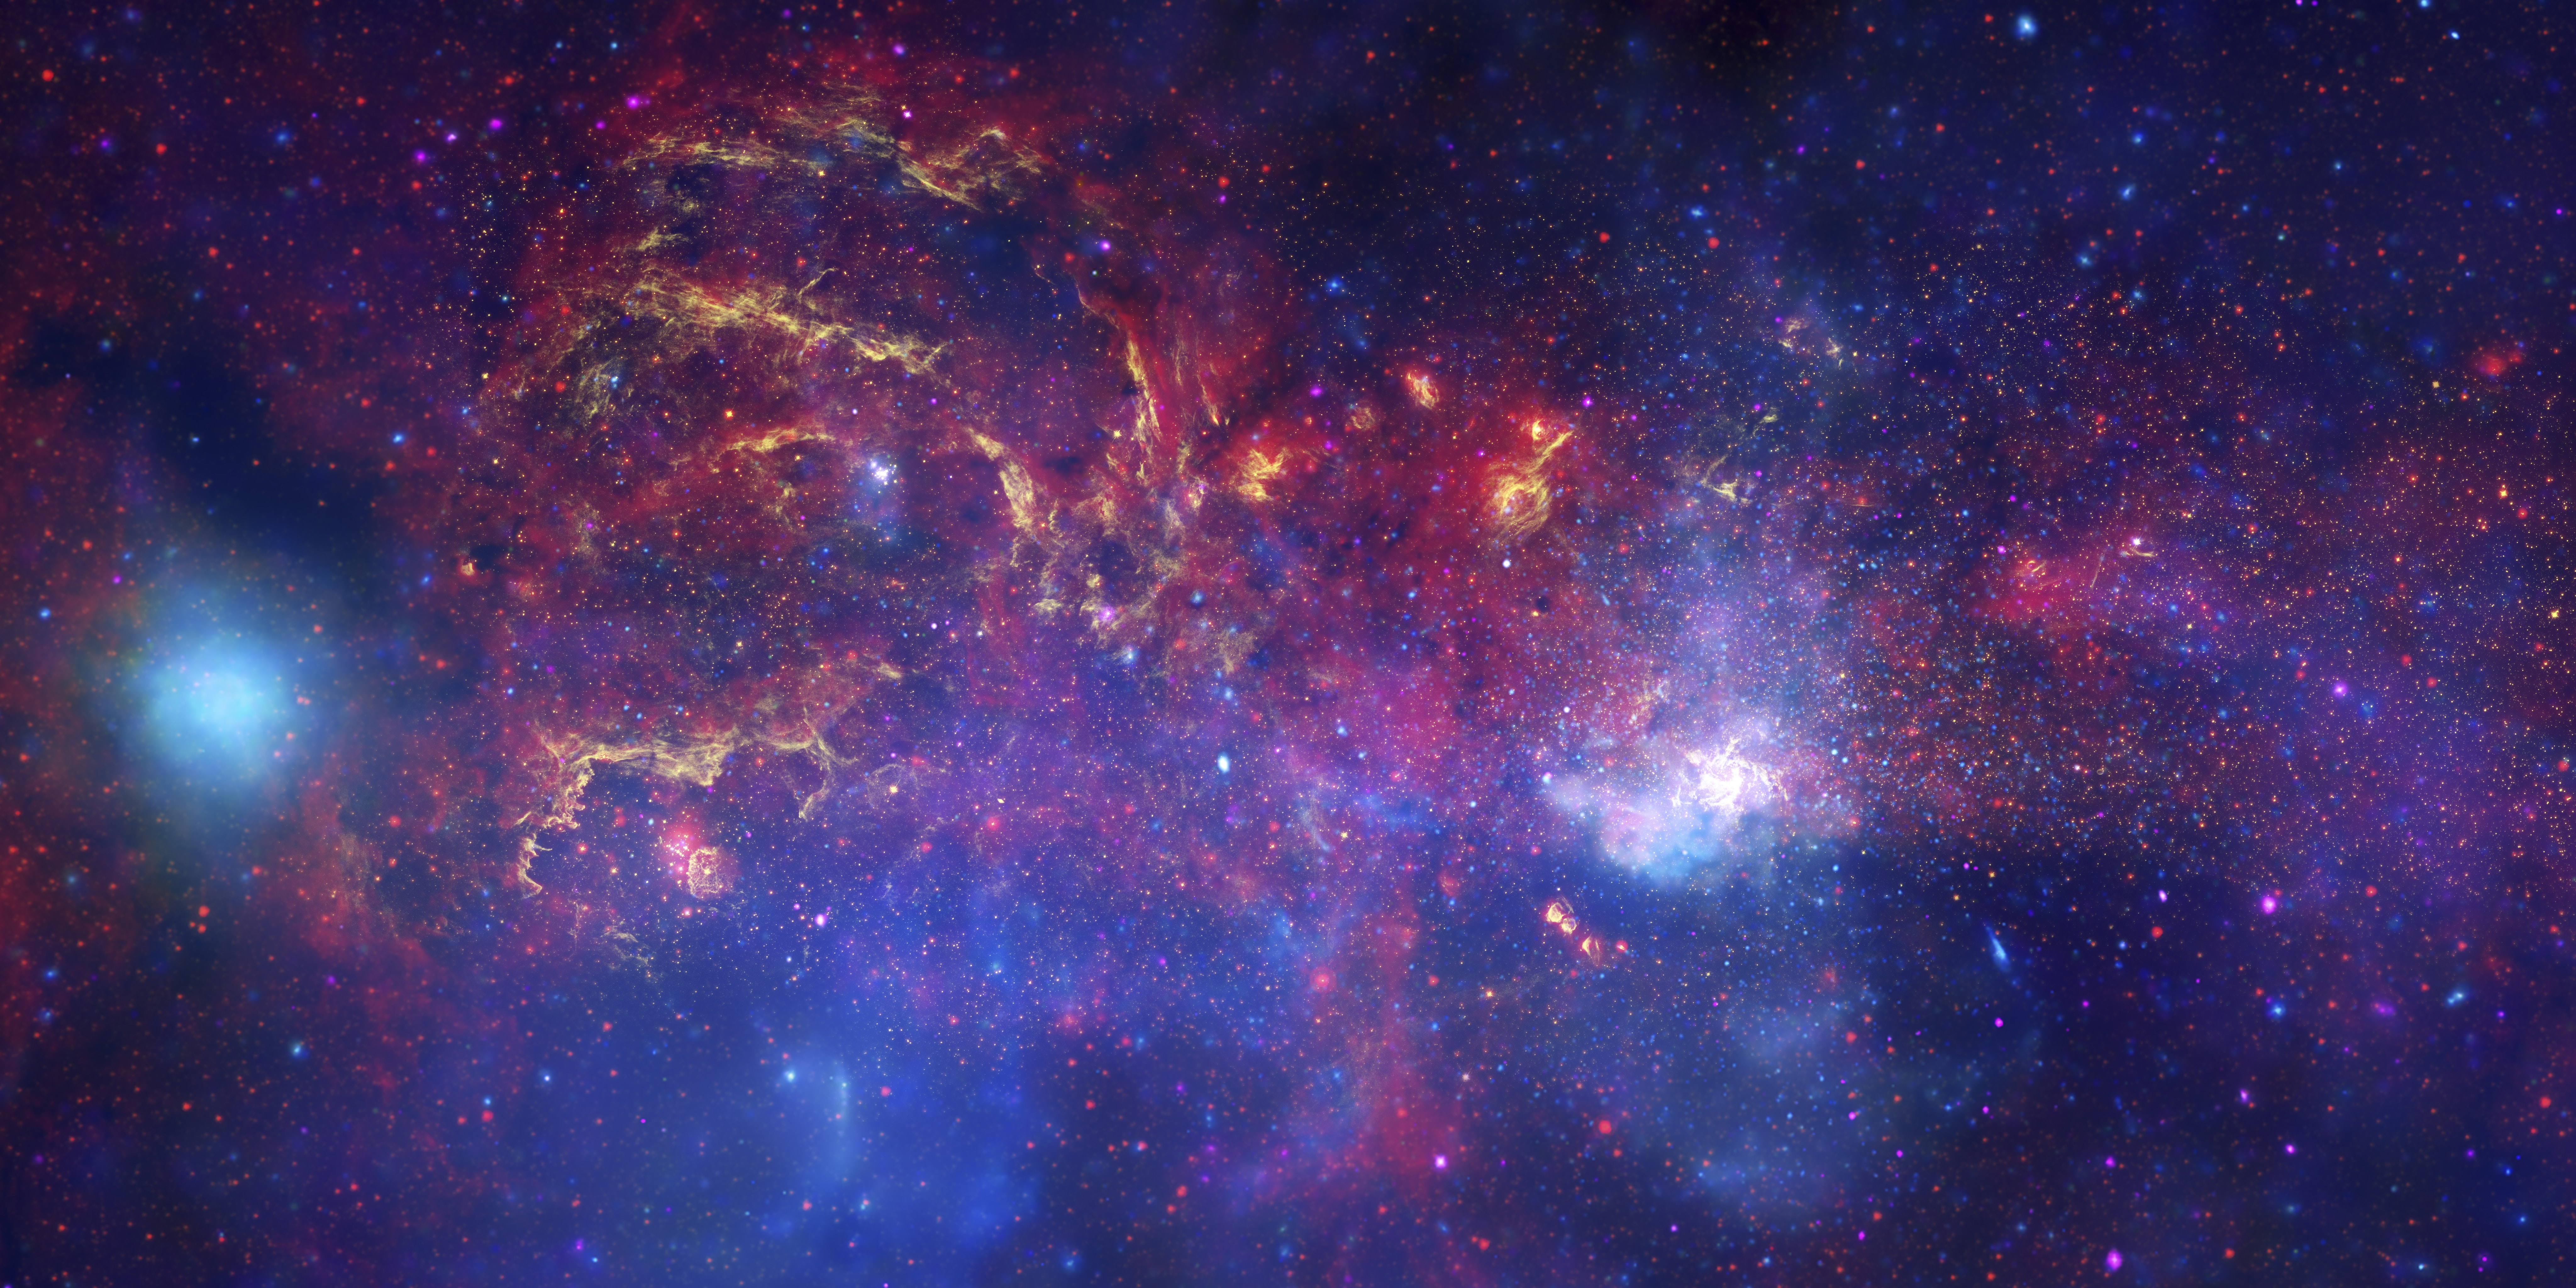 En bild av ett tätt, lökformigt, gas- och stjärnfyllt område i rymden.